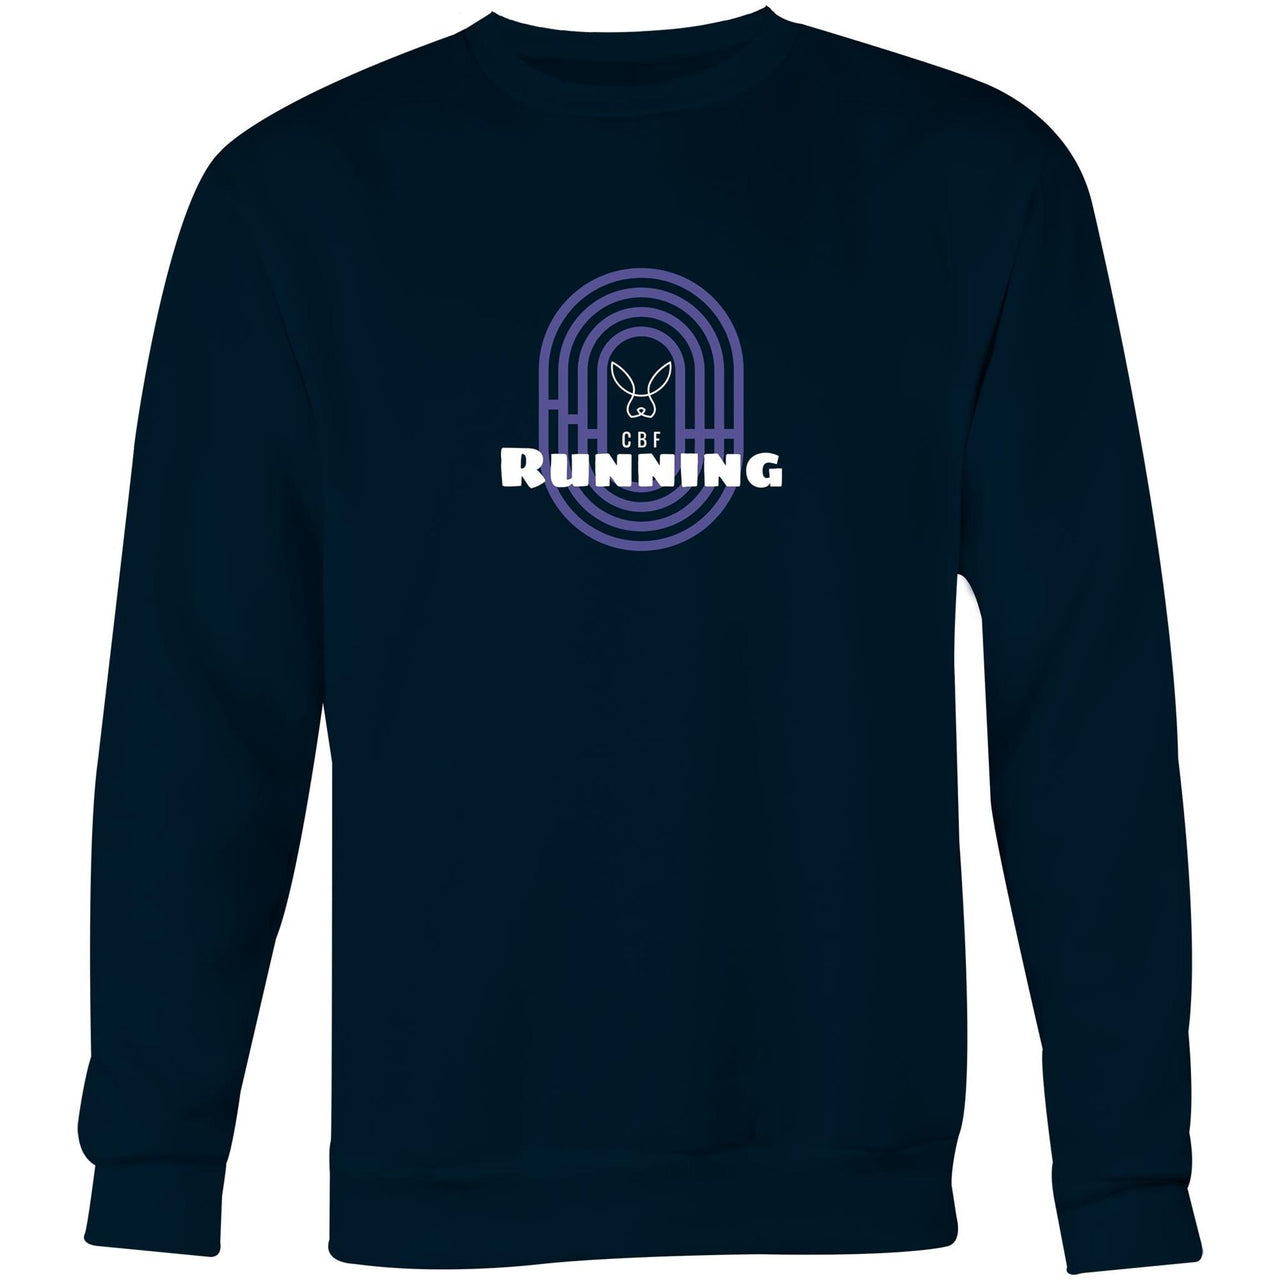 CBF Running Crew Sweatshirt Navy by CBF Clothing